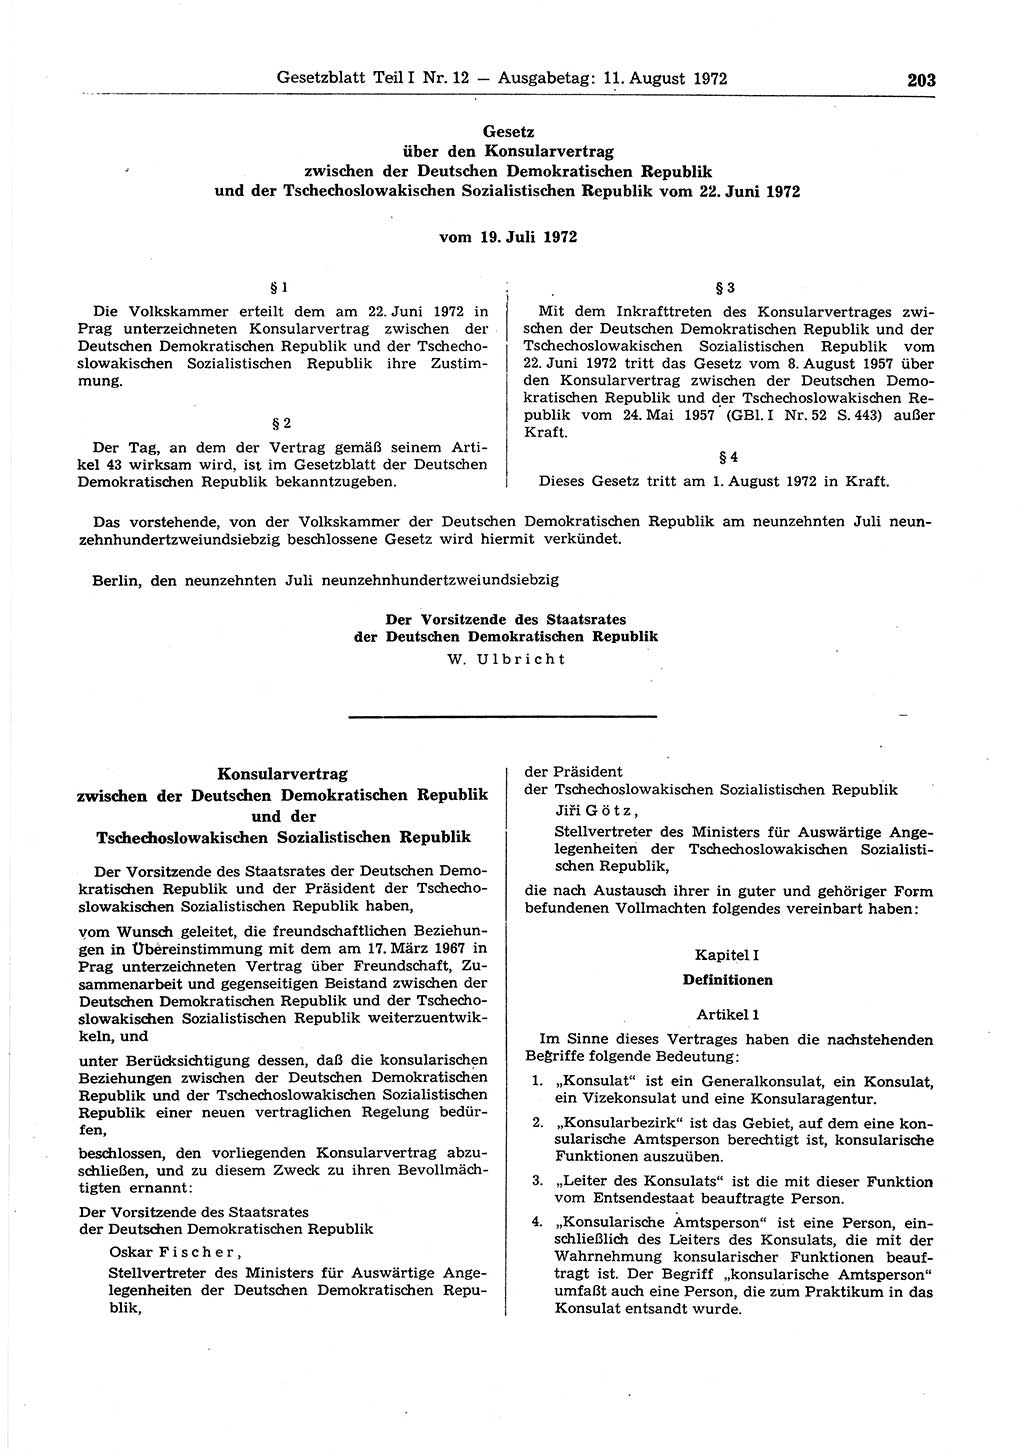 Gesetzblatt (GBl.) der Deutschen Demokratischen Republik (DDR) Teil Ⅰ 1972, Seite 203 (GBl. DDR Ⅰ 1972, S. 203)